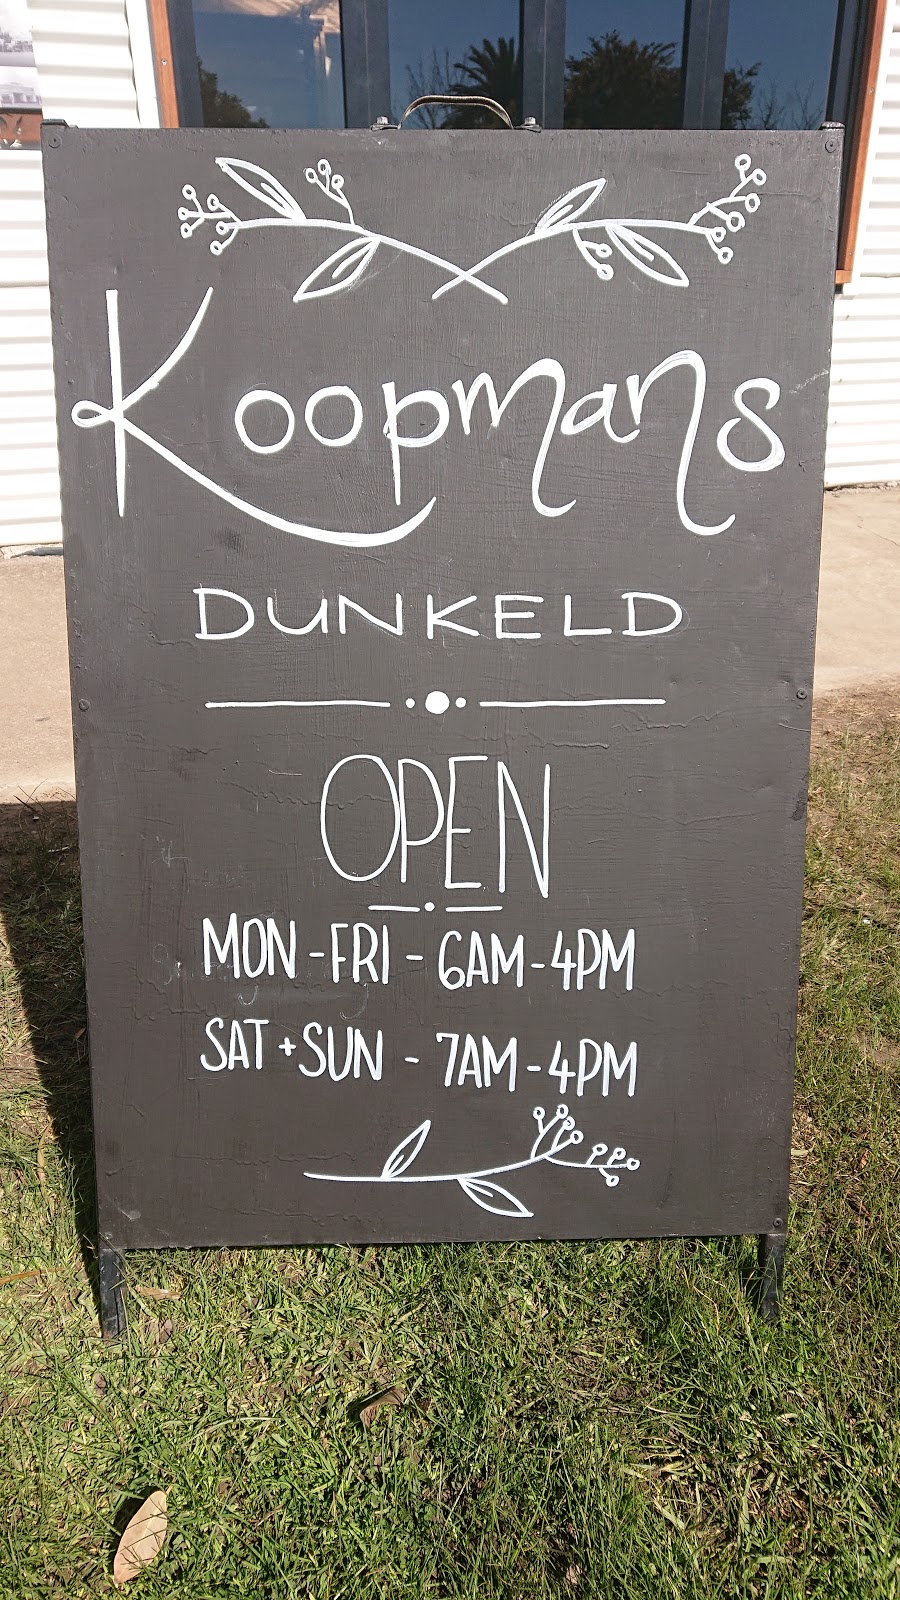 Koopmans Dunkeld | cafe | 95 Parker St, Dunkeld VIC 3294, Australia | 0432024933 OR +61 432 024 933